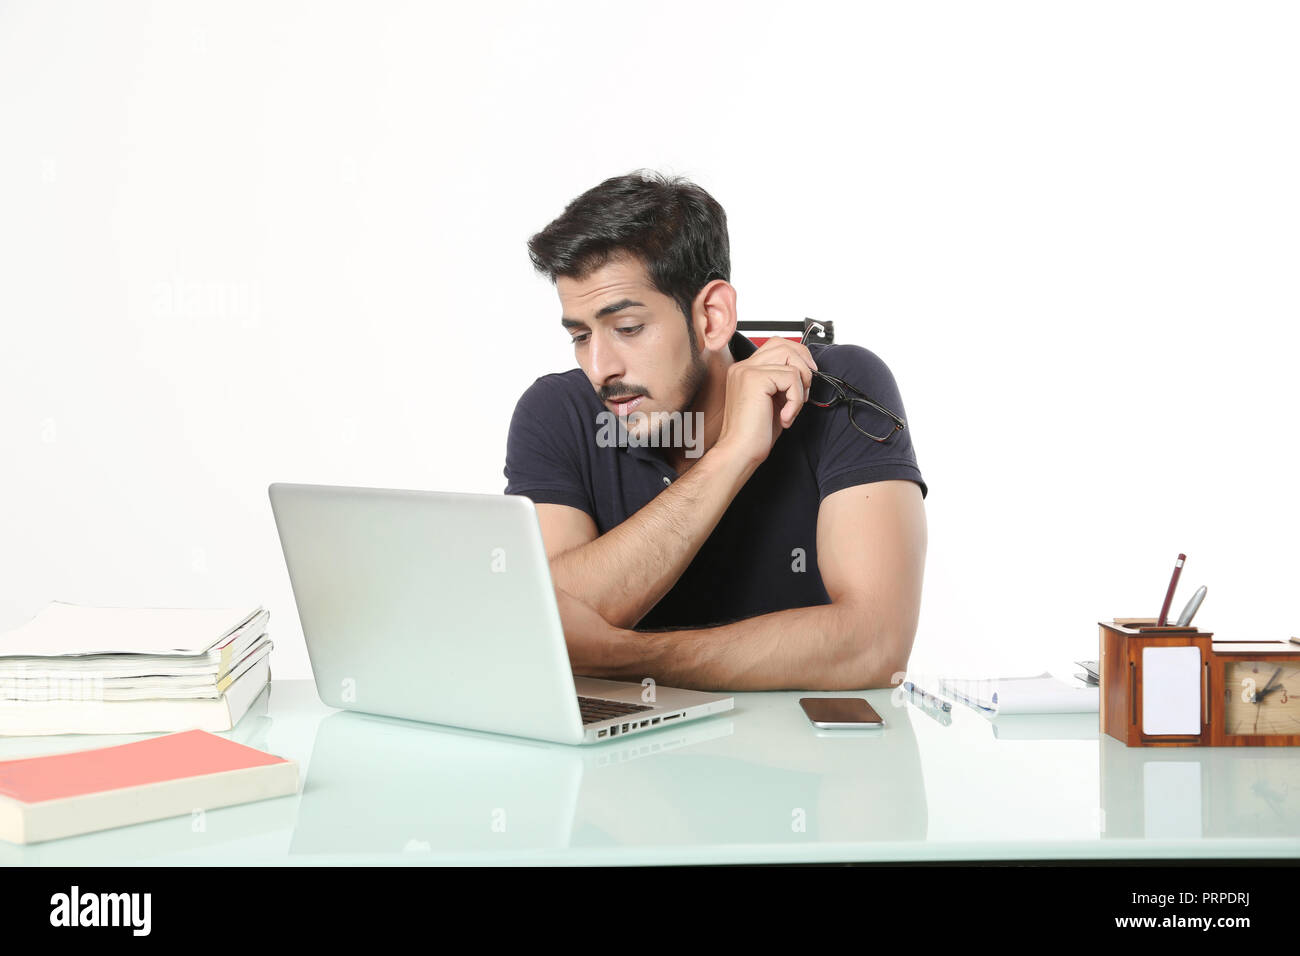 L'homme est à la recherche de travail ordinateur portable assis sur la chaise dans la cabine. isolé sur fond blanc. Banque D'Images